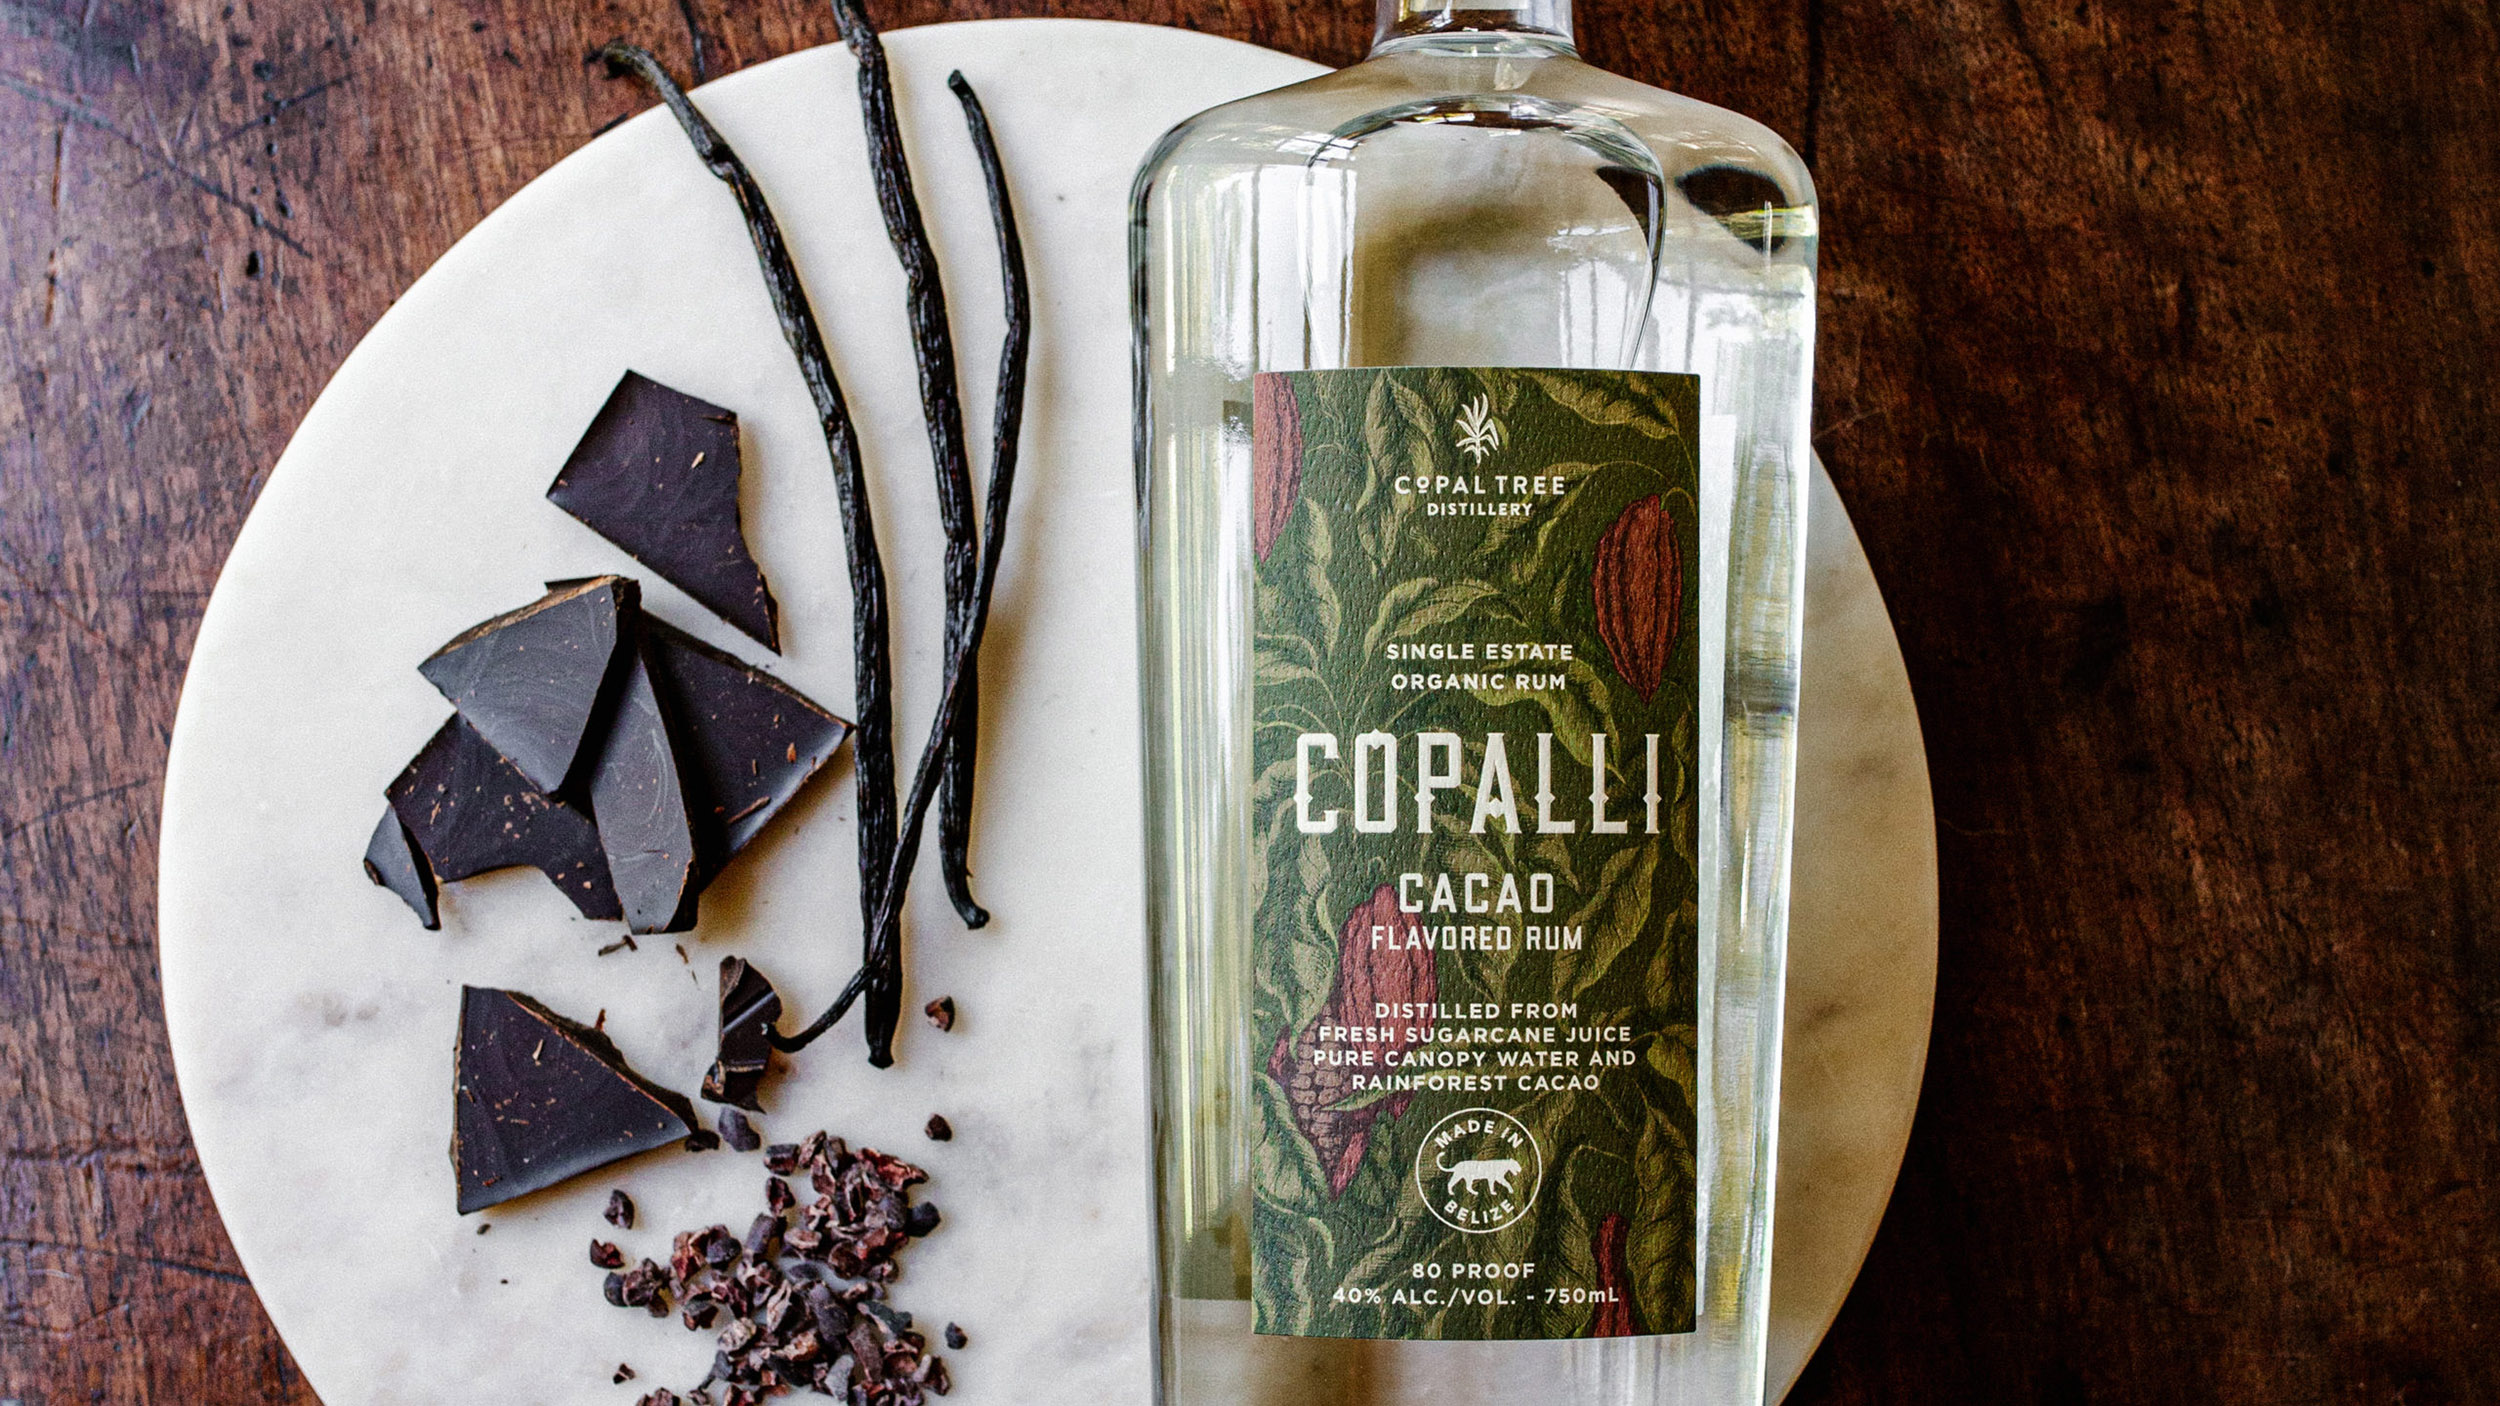 Copalli Cacao